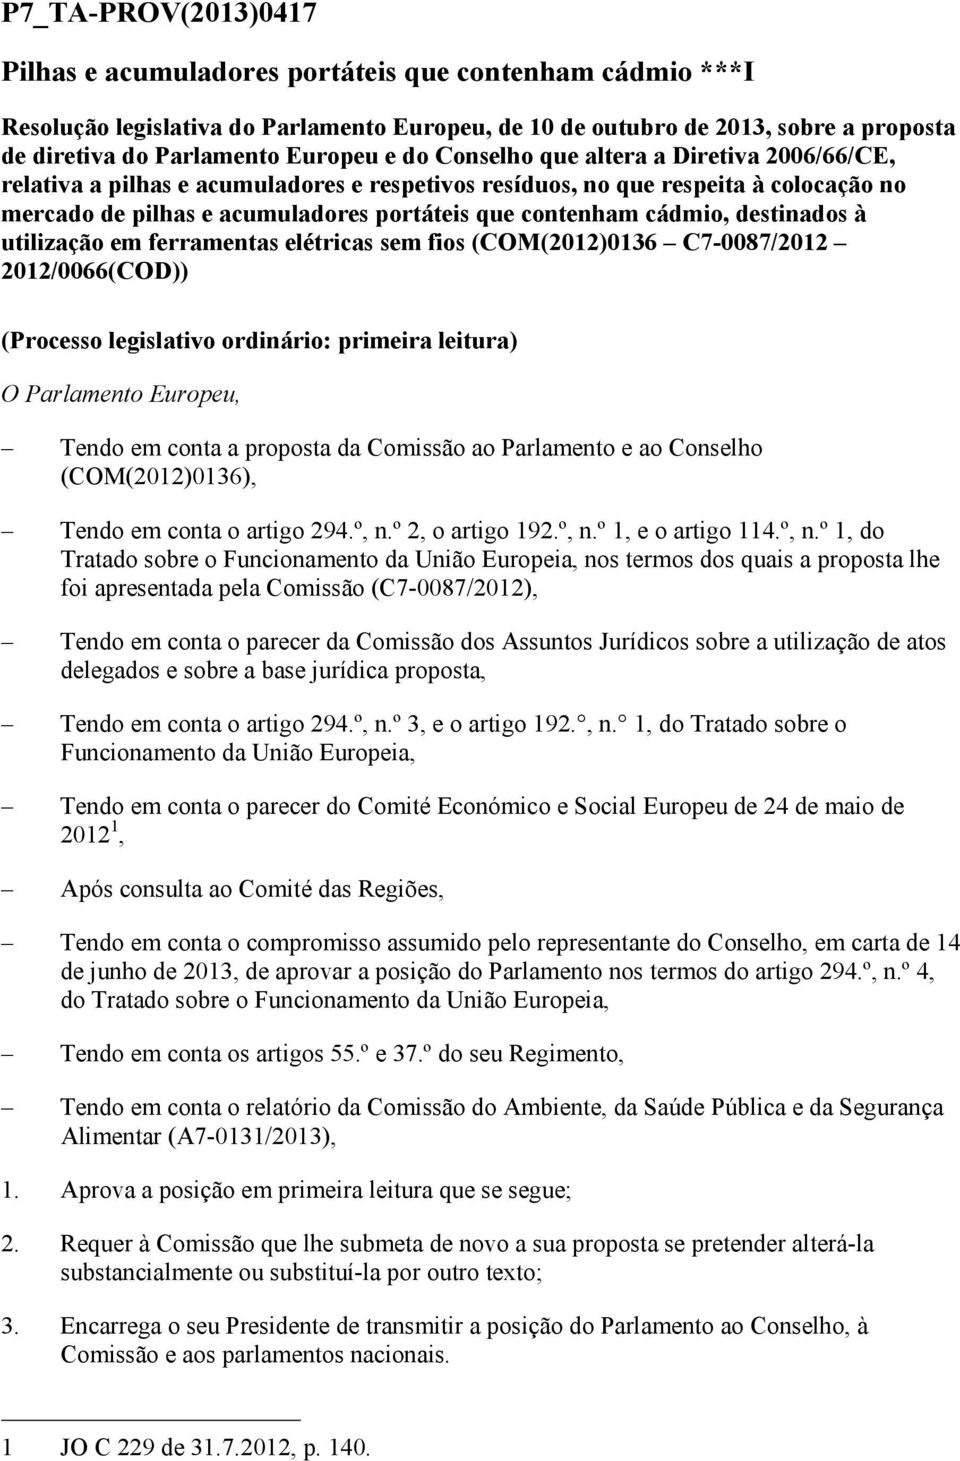 cádmio, destinados à utilização em ferramentas elétricas sem fios (COM(2012)0136 C7-0087/2012 2012/0066(COD)) (Processo legislativo ordinário: primeira leitura) O Parlamento Europeu, Tendo em conta a